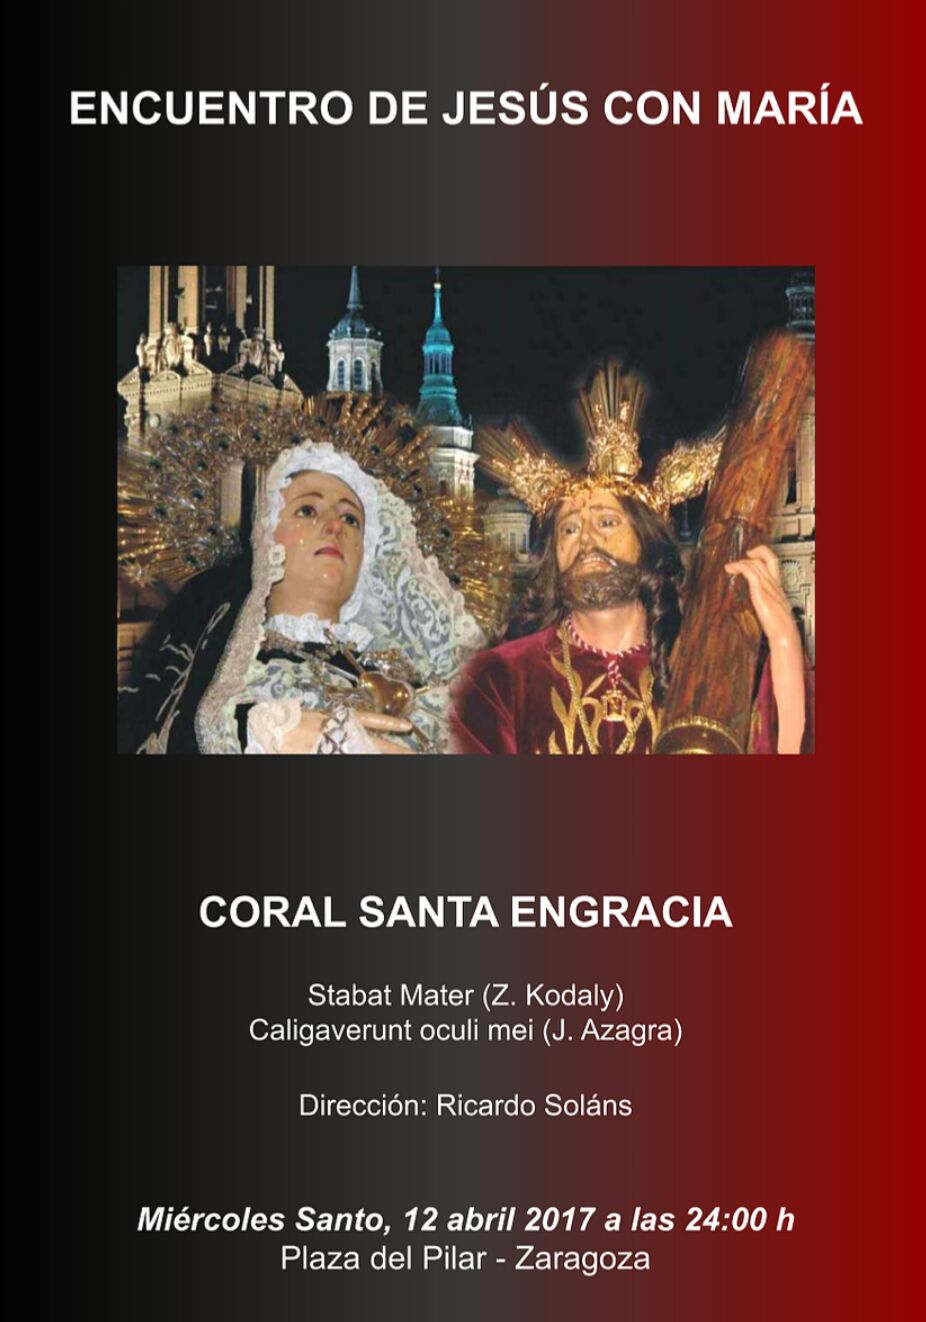 Encuentro de Jesús con María - Coral Santa Engracia